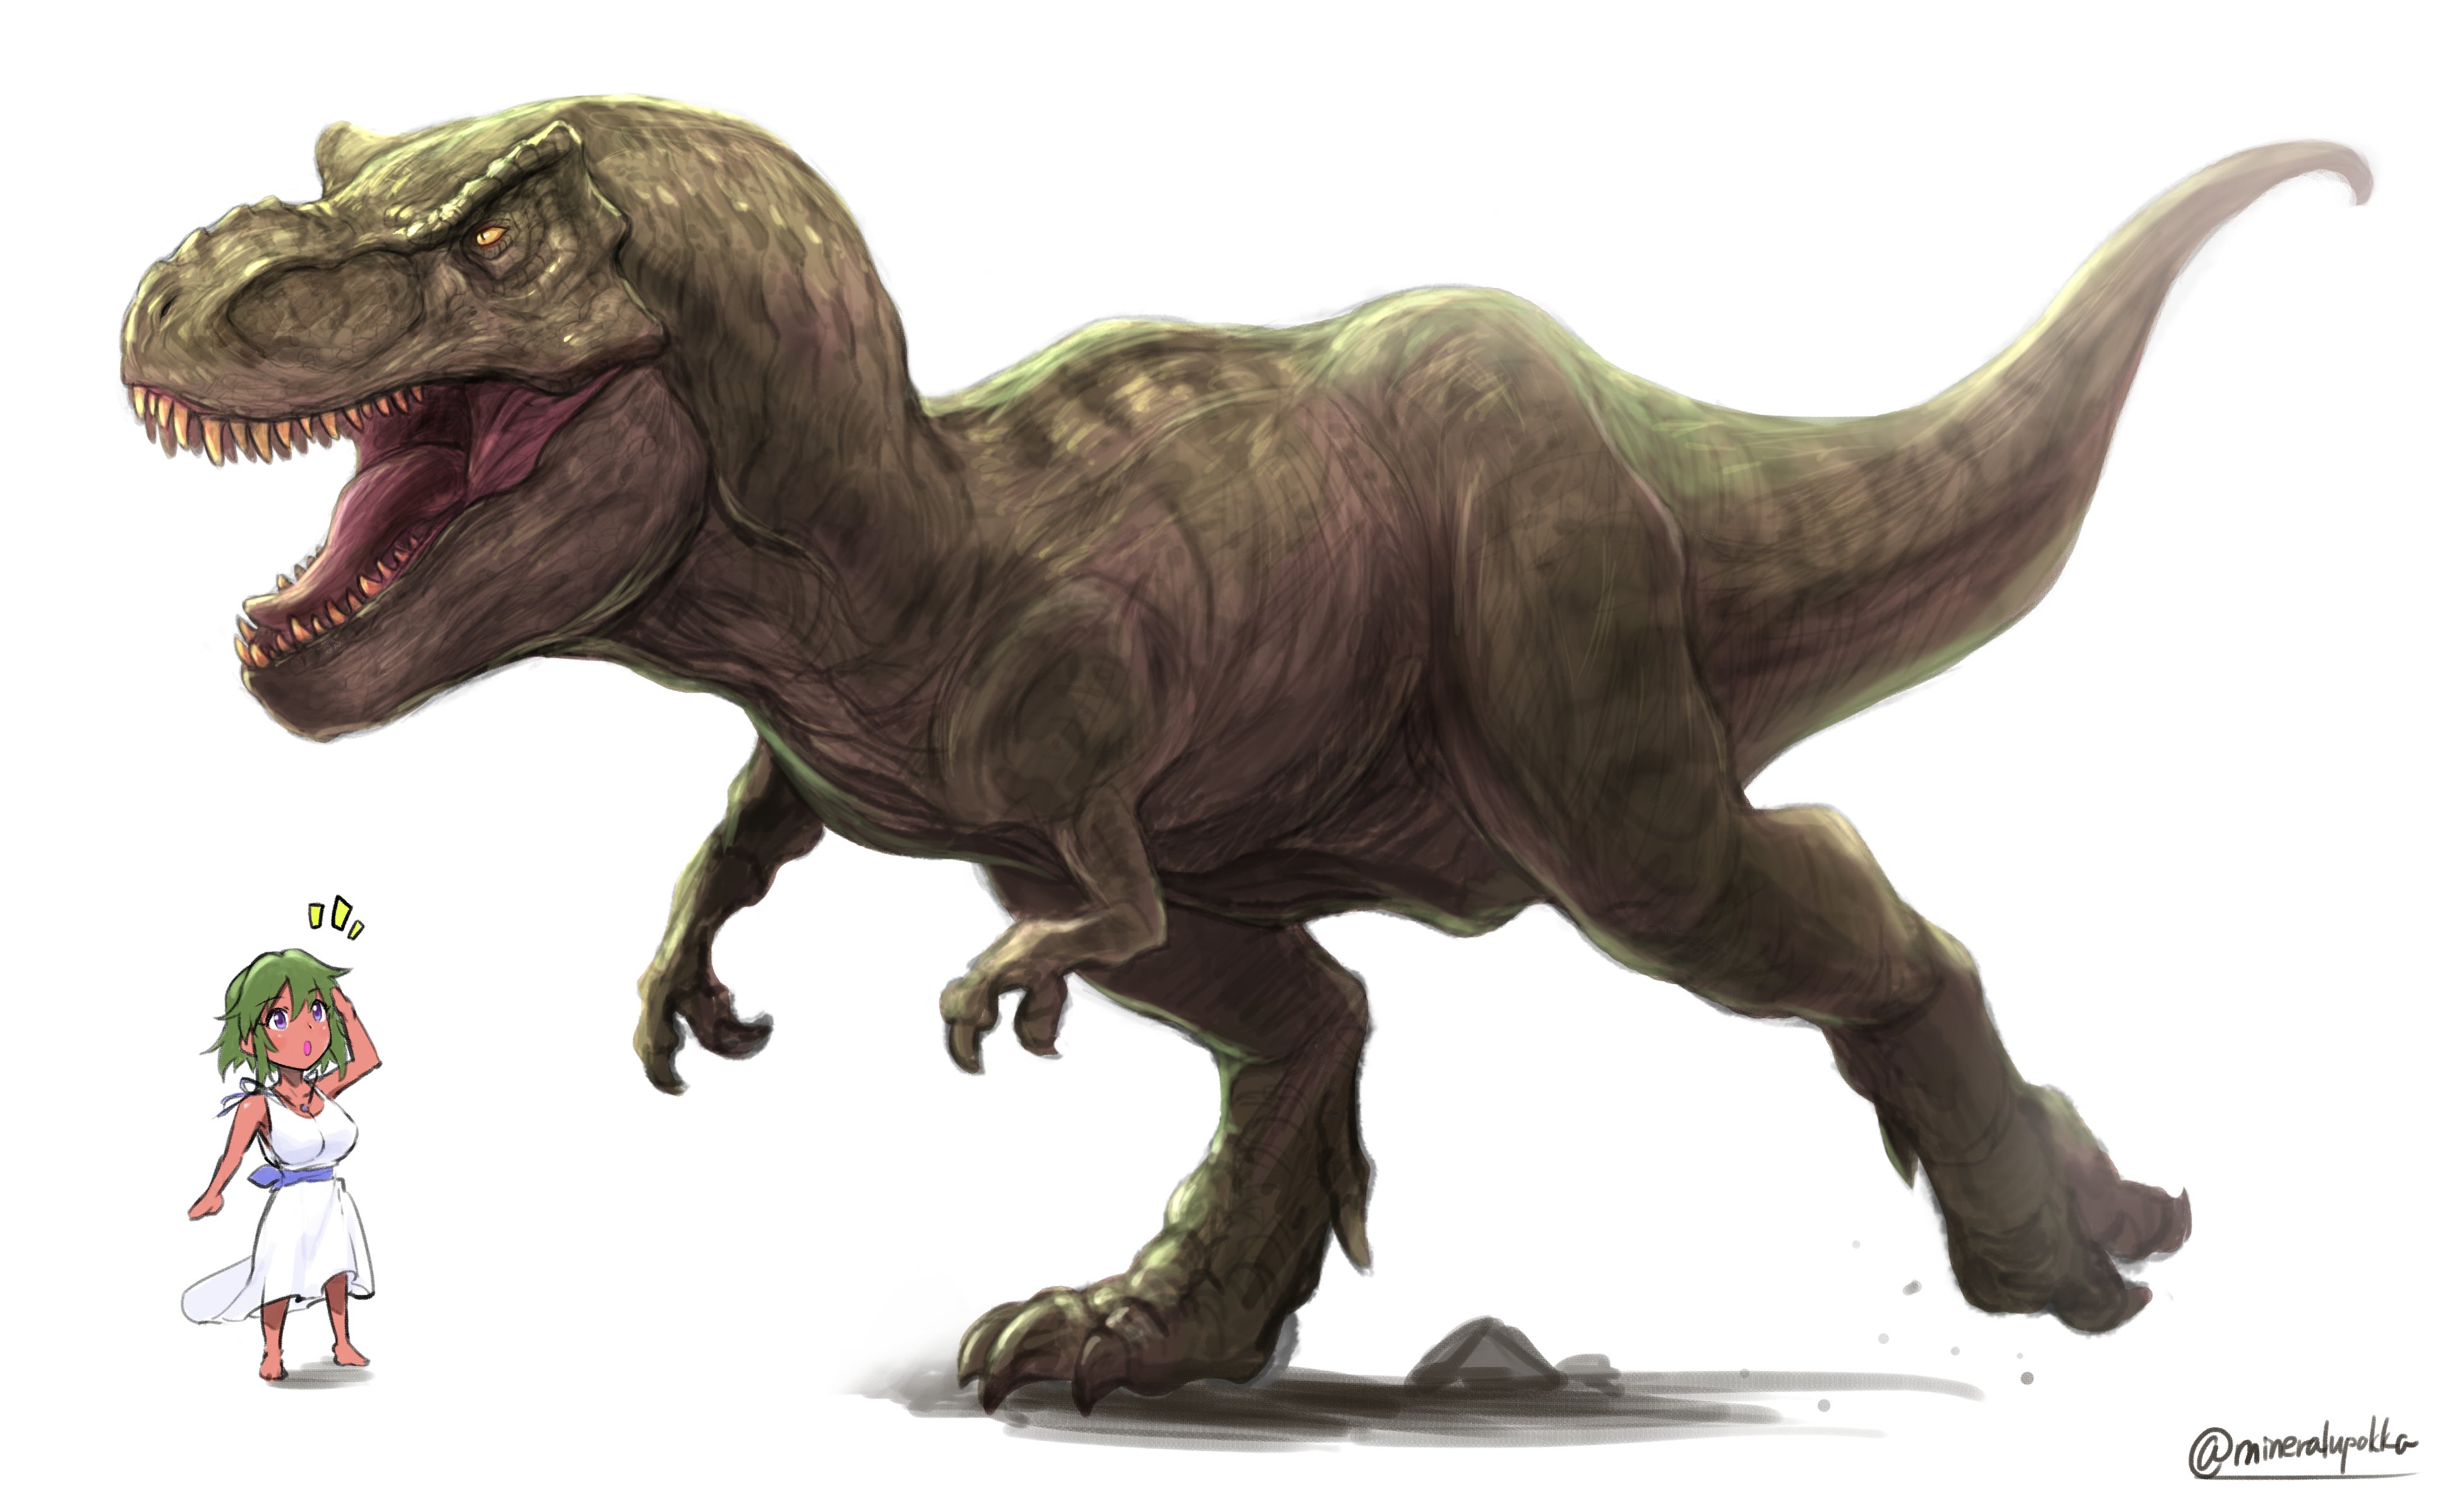 のん イラストお題募集中 ナターリアとティラノサウルスの大きさ比べ 仕事終わりの息抜きに唐突にティラノサウルスを描きたくなったので 今年はジュラシックワールドの最新作が公開されるから楽しみ デレステ アイマス最高 ナターリア